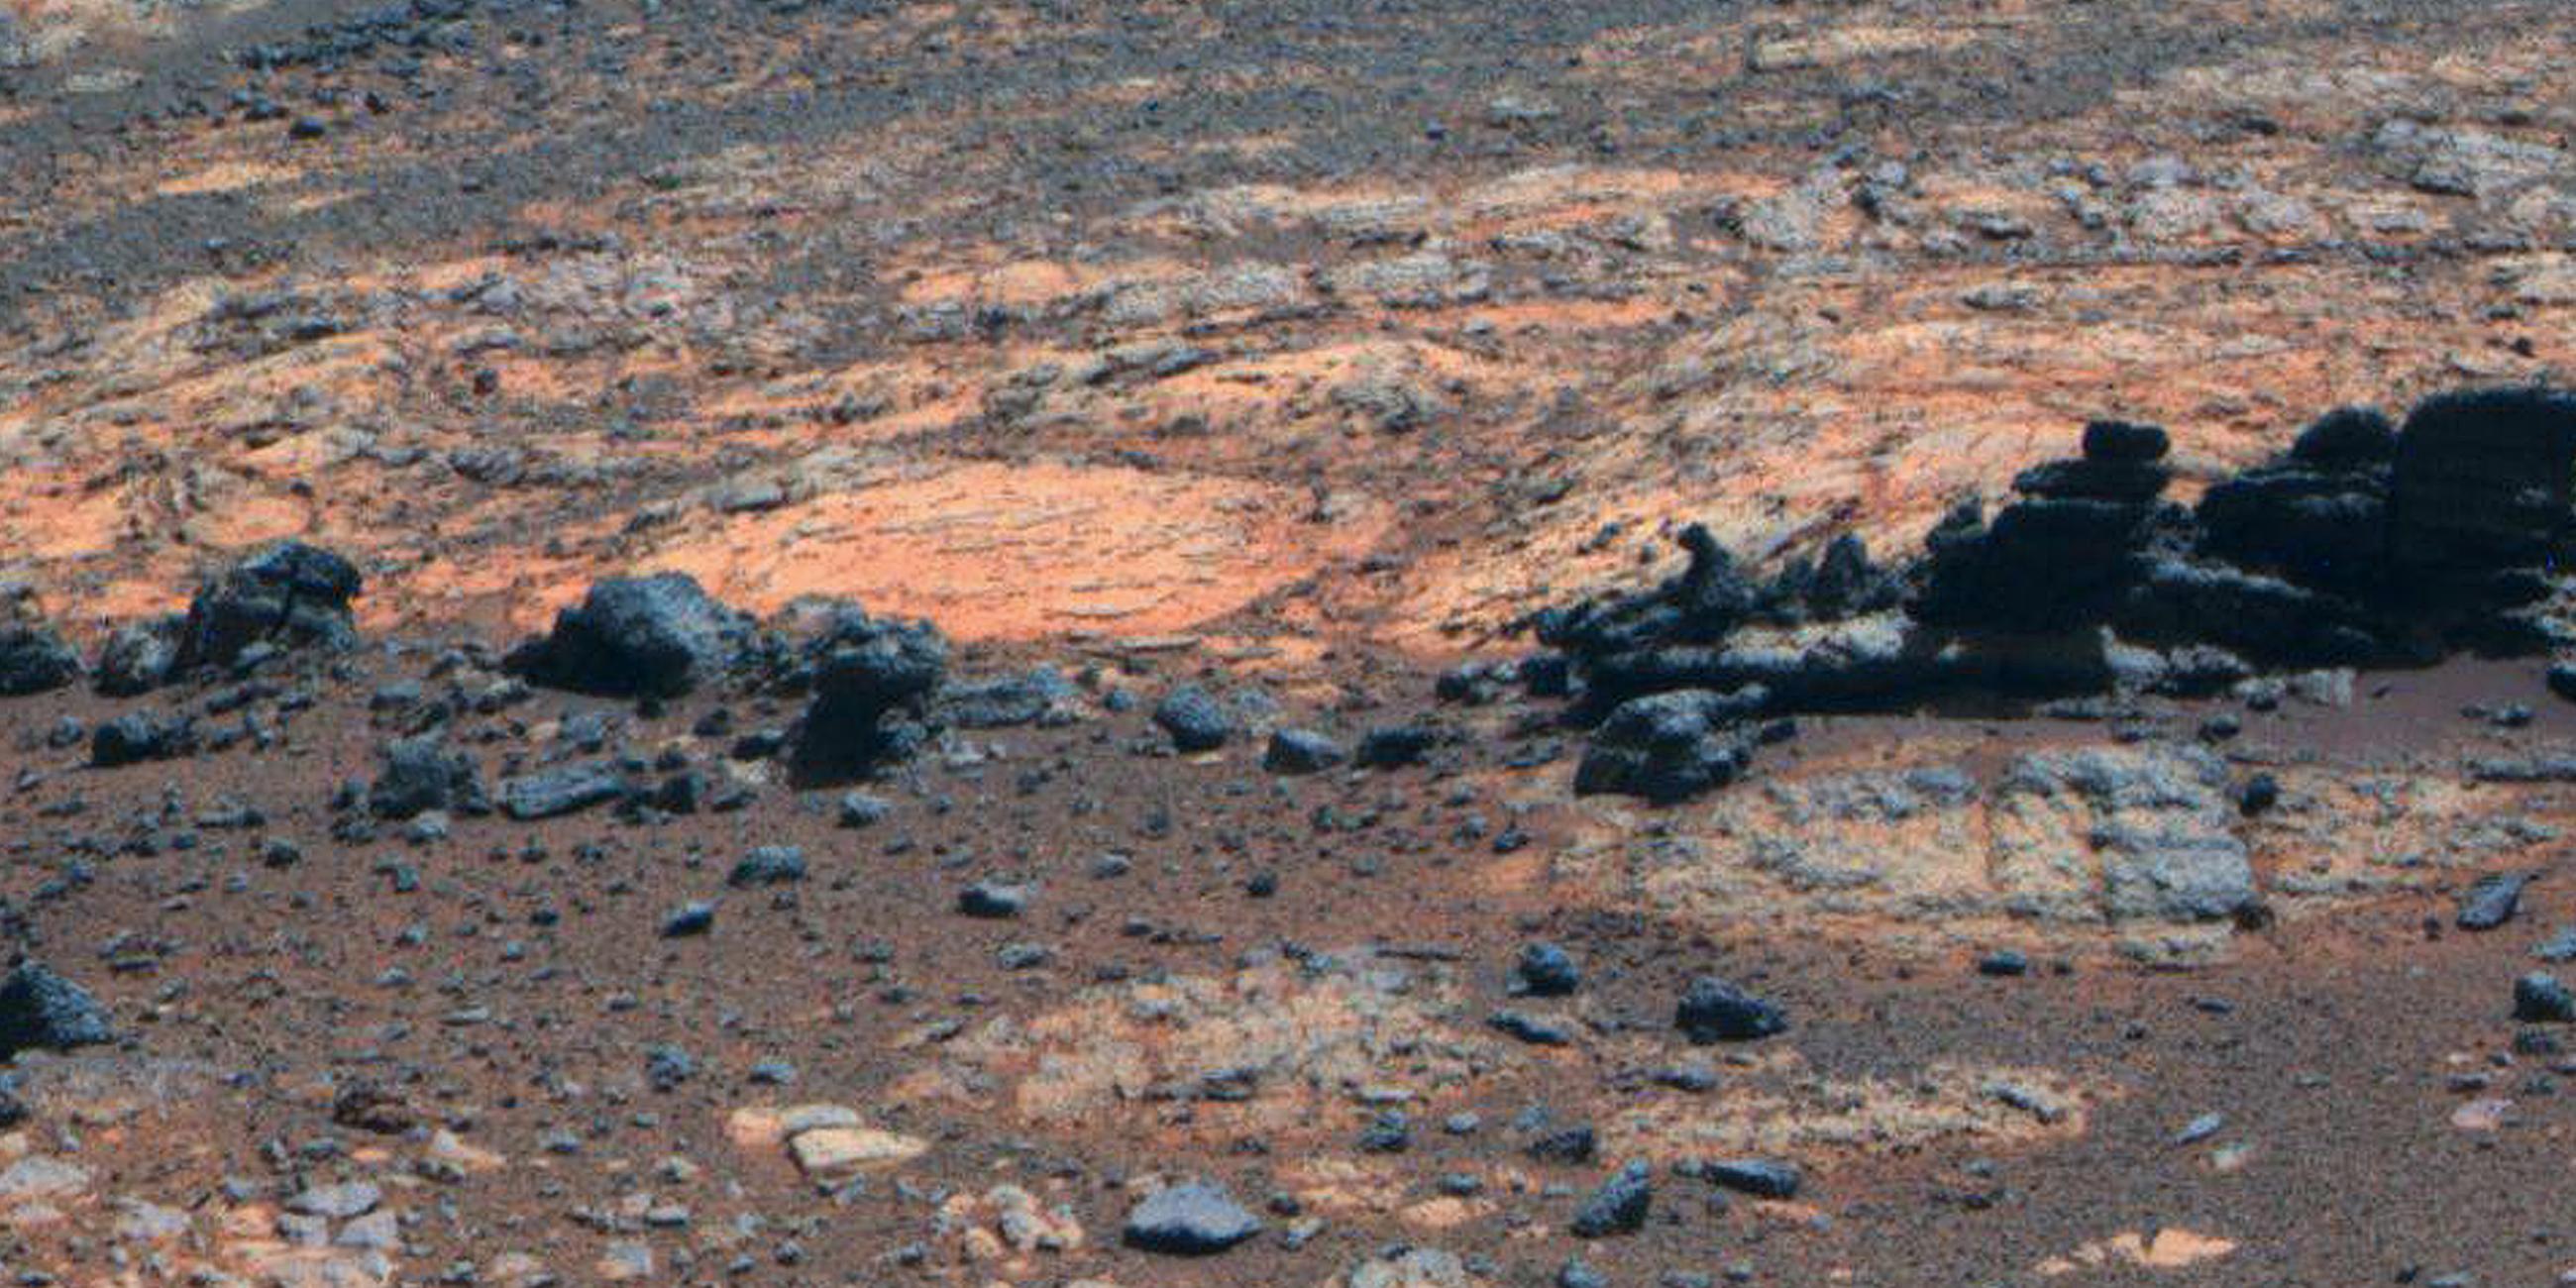 Archiv: Gesteinsbrocken aufgenommen vom Mars-Rover "Opportunity", aufgenommen am 23.08.2012